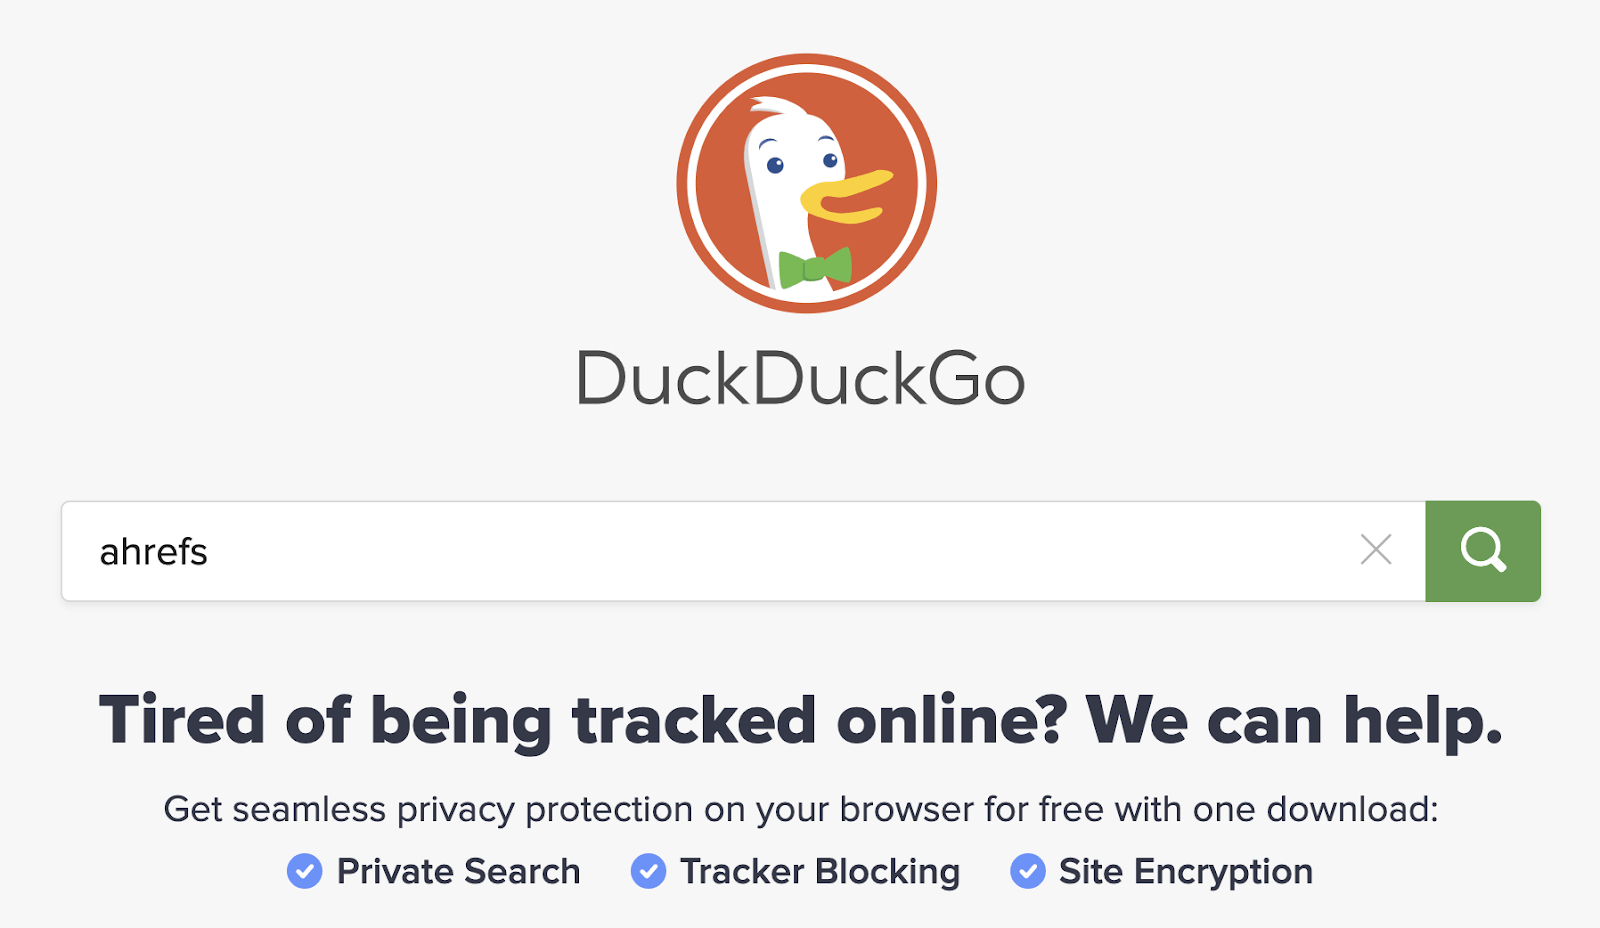 Домашняя страница DuckDuckGo. Поисковый запрос "ahrefs" в текстовом поле